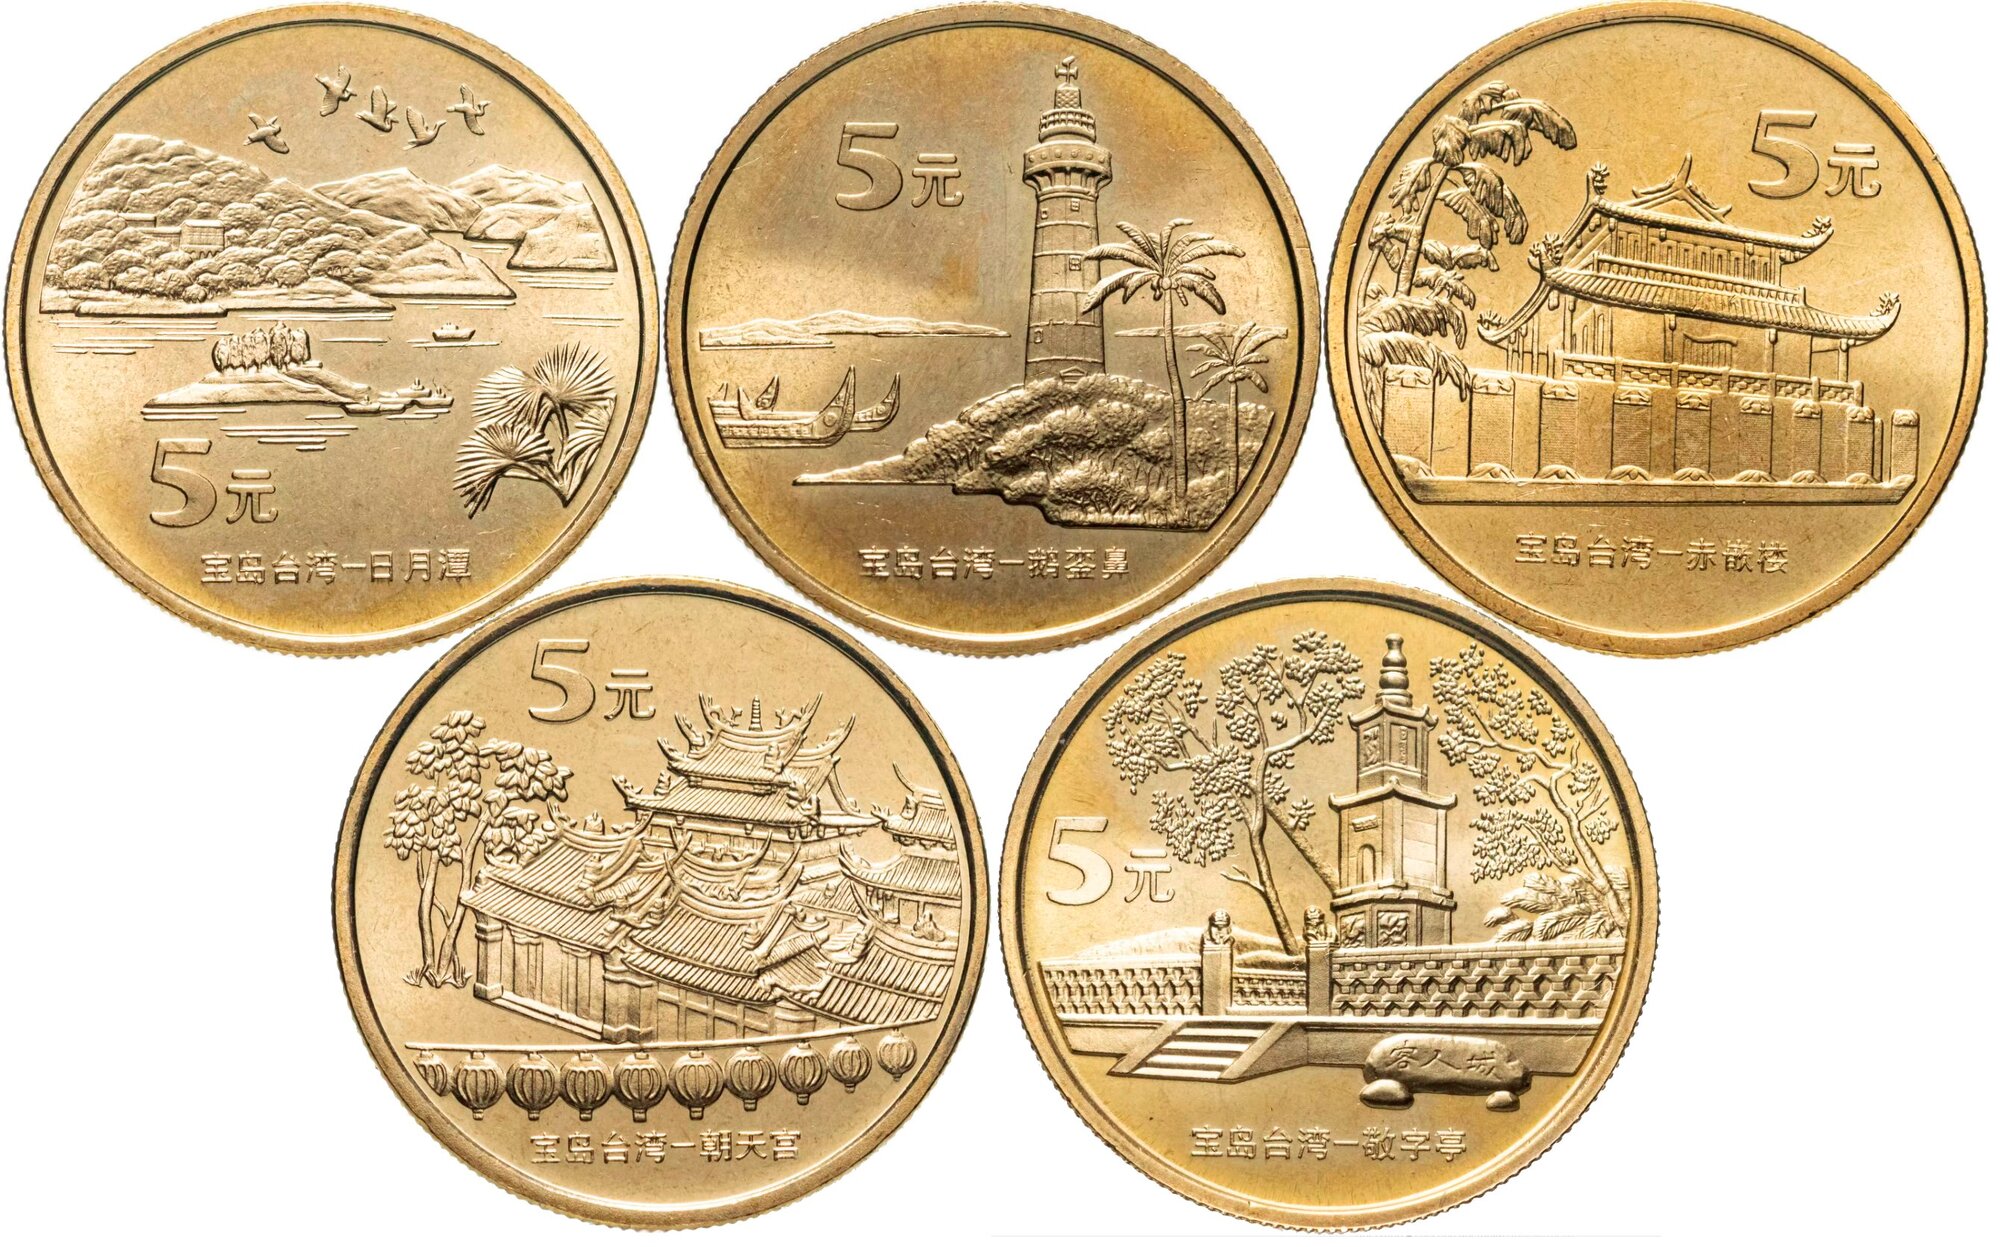 Китай набор юбилейных монет 5 юань 2003-05 г. в Достопримечательности Китая и Тайваня состояние UNC (без обращения) в капсуле